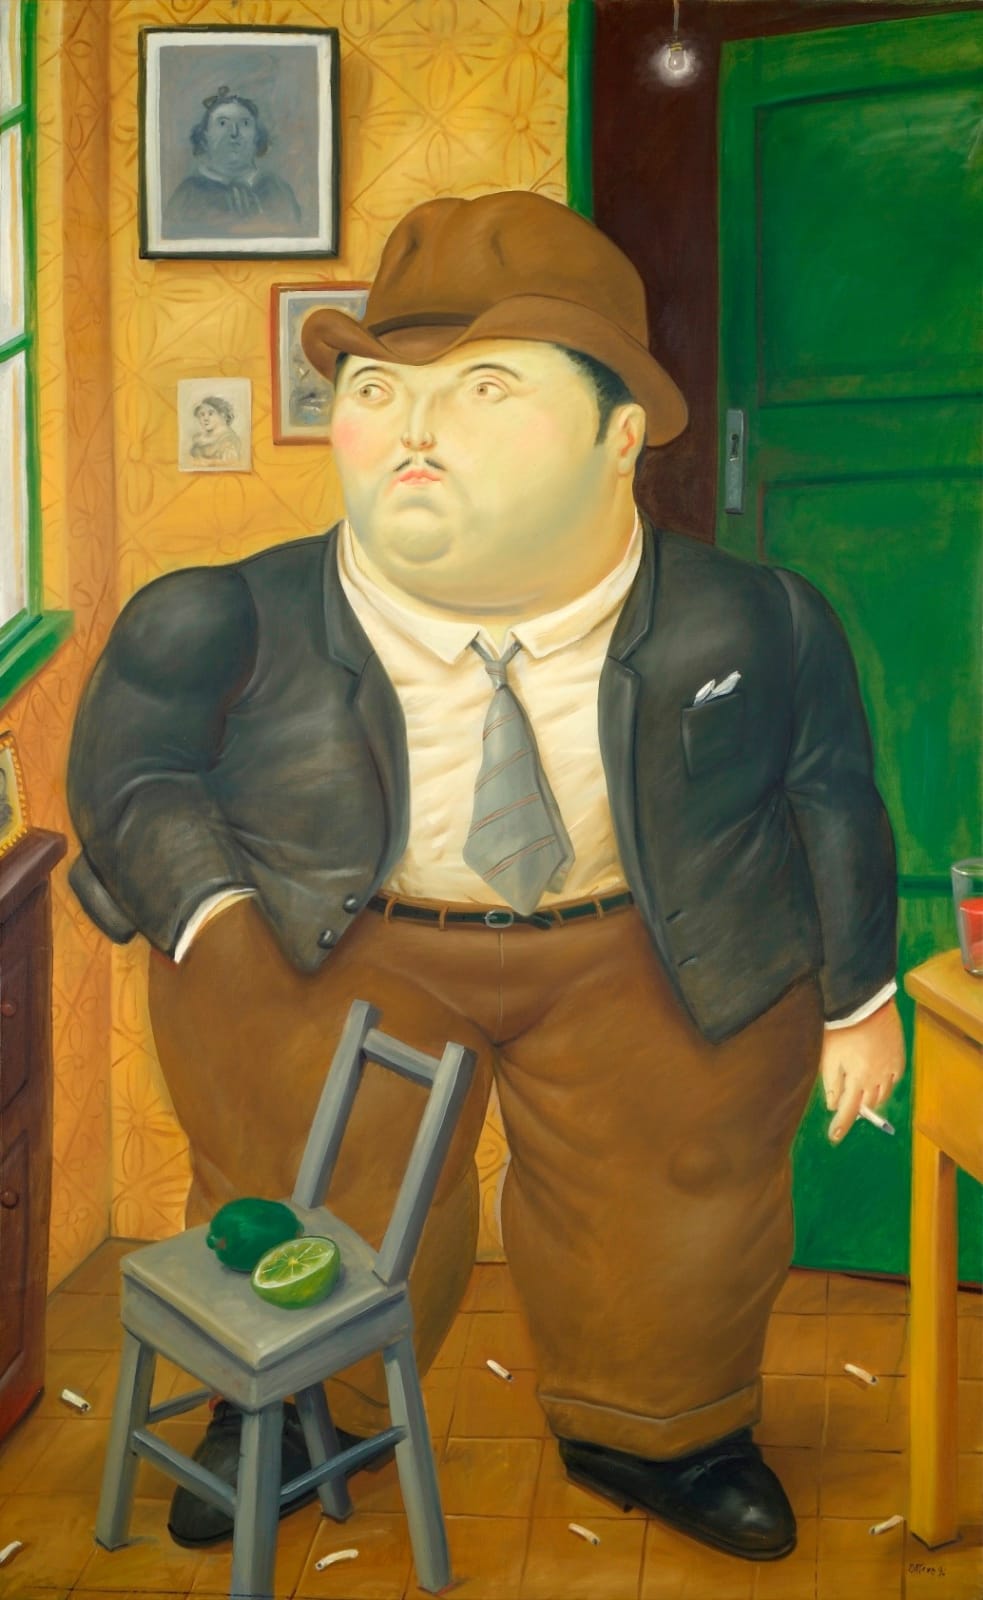 Fernando Botero, Interior, 1996